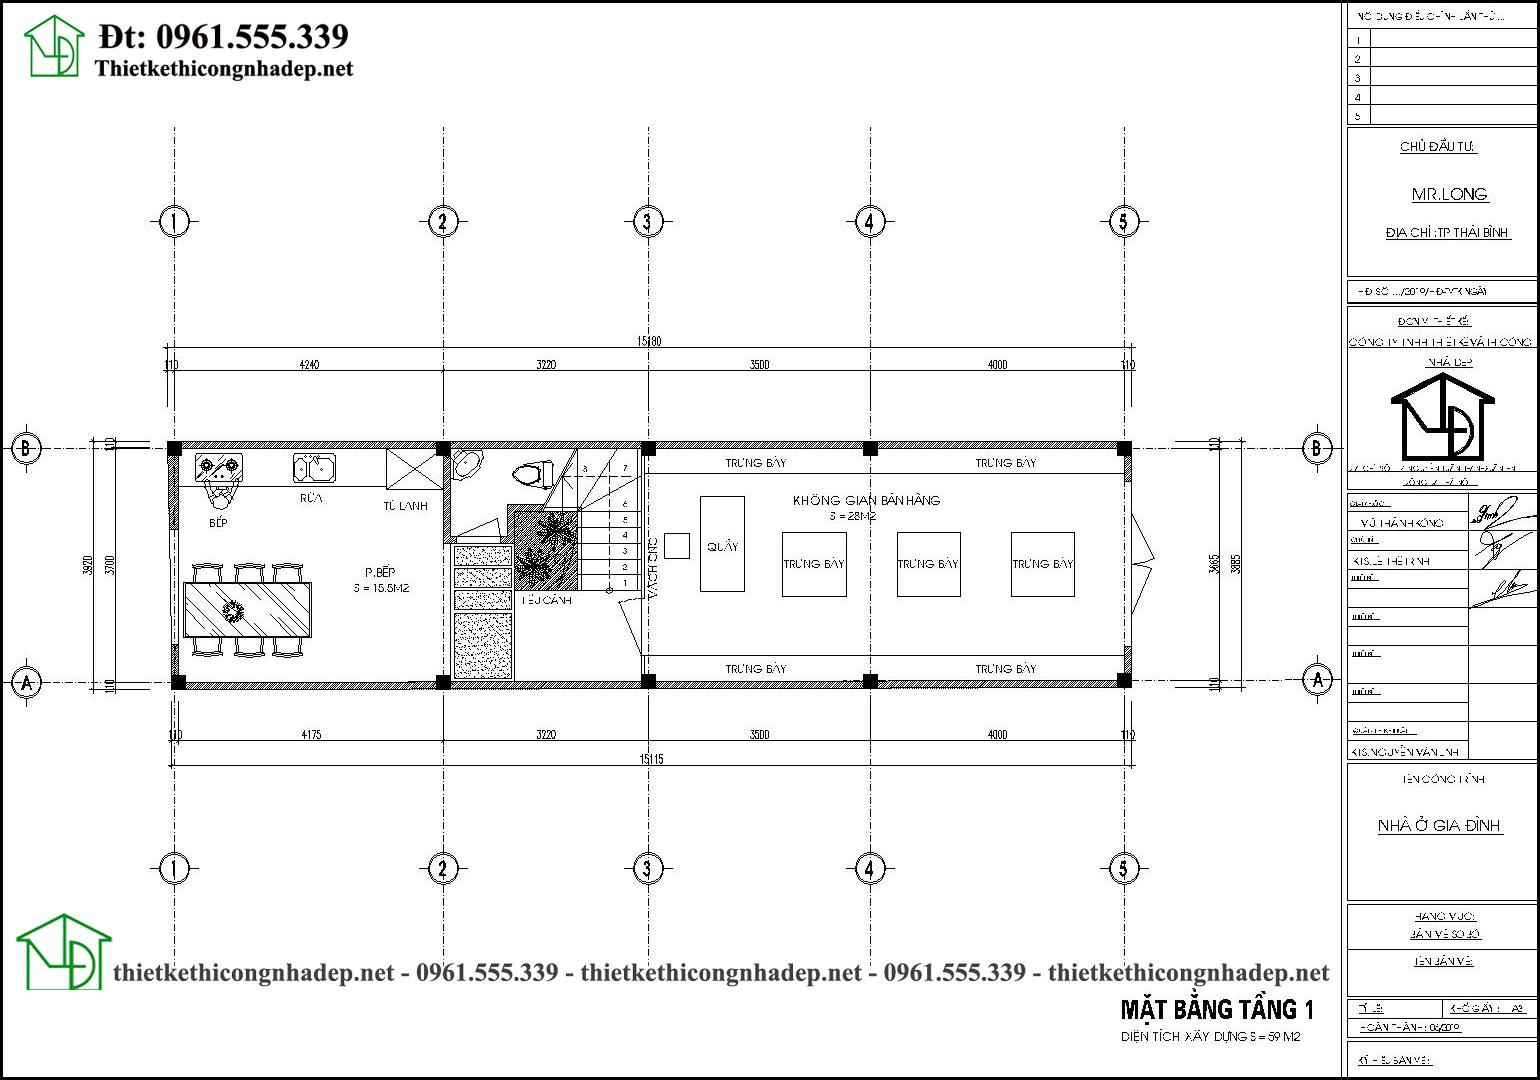 Mặt bằng tầng 1 thiết kế nhà ống 4 tầng 4x15m tai Hải Dương NDNP4T14